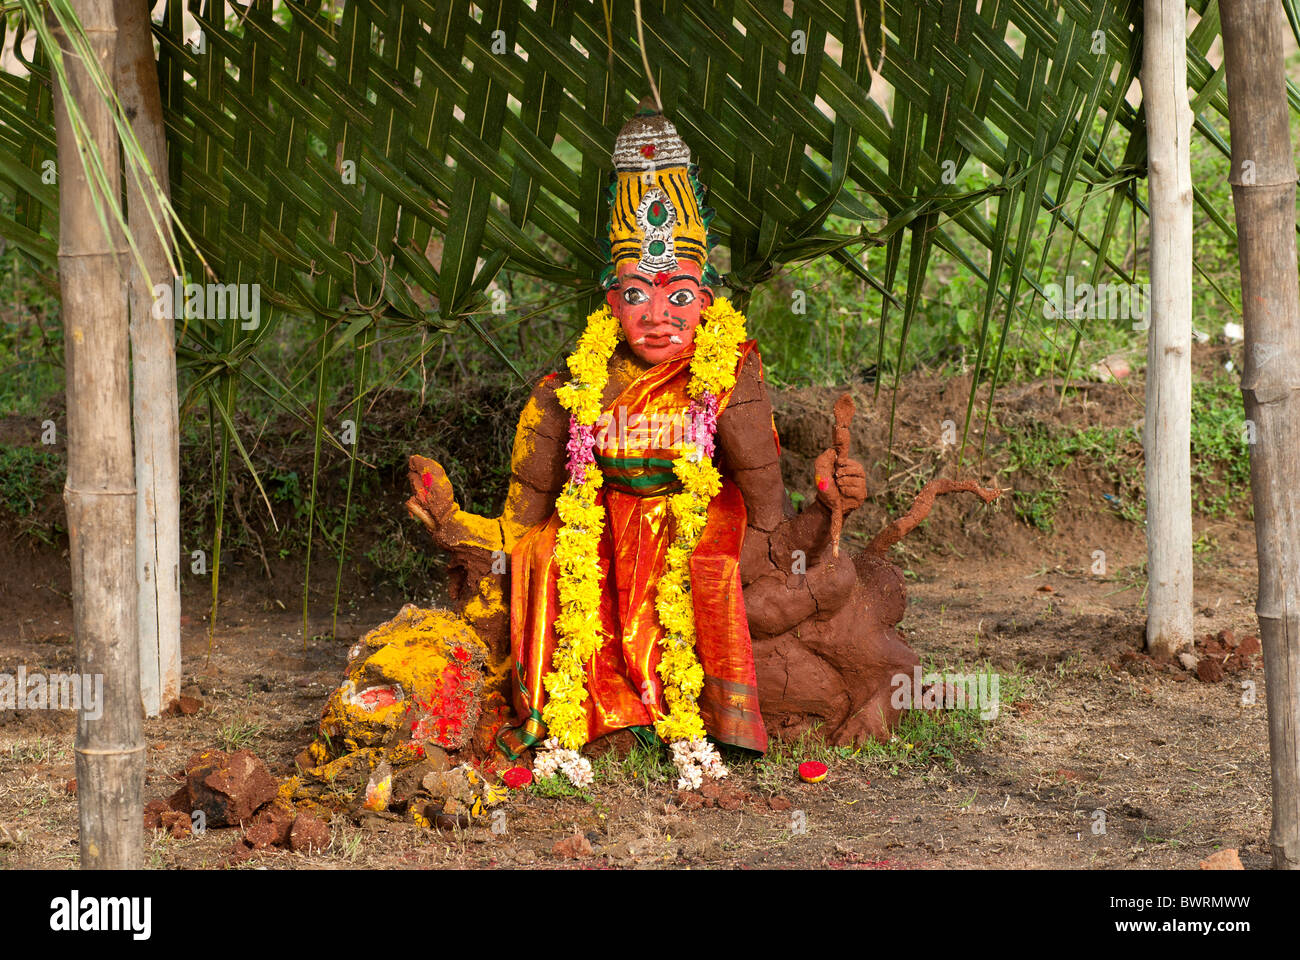 Kali sculptés de boue pour Mahabharatha kuthu Patukalam Sevelimedu ; festival à Kanchipuram, dans le Tamil Nadu, Inde du Sud, Inde. Banque D'Images